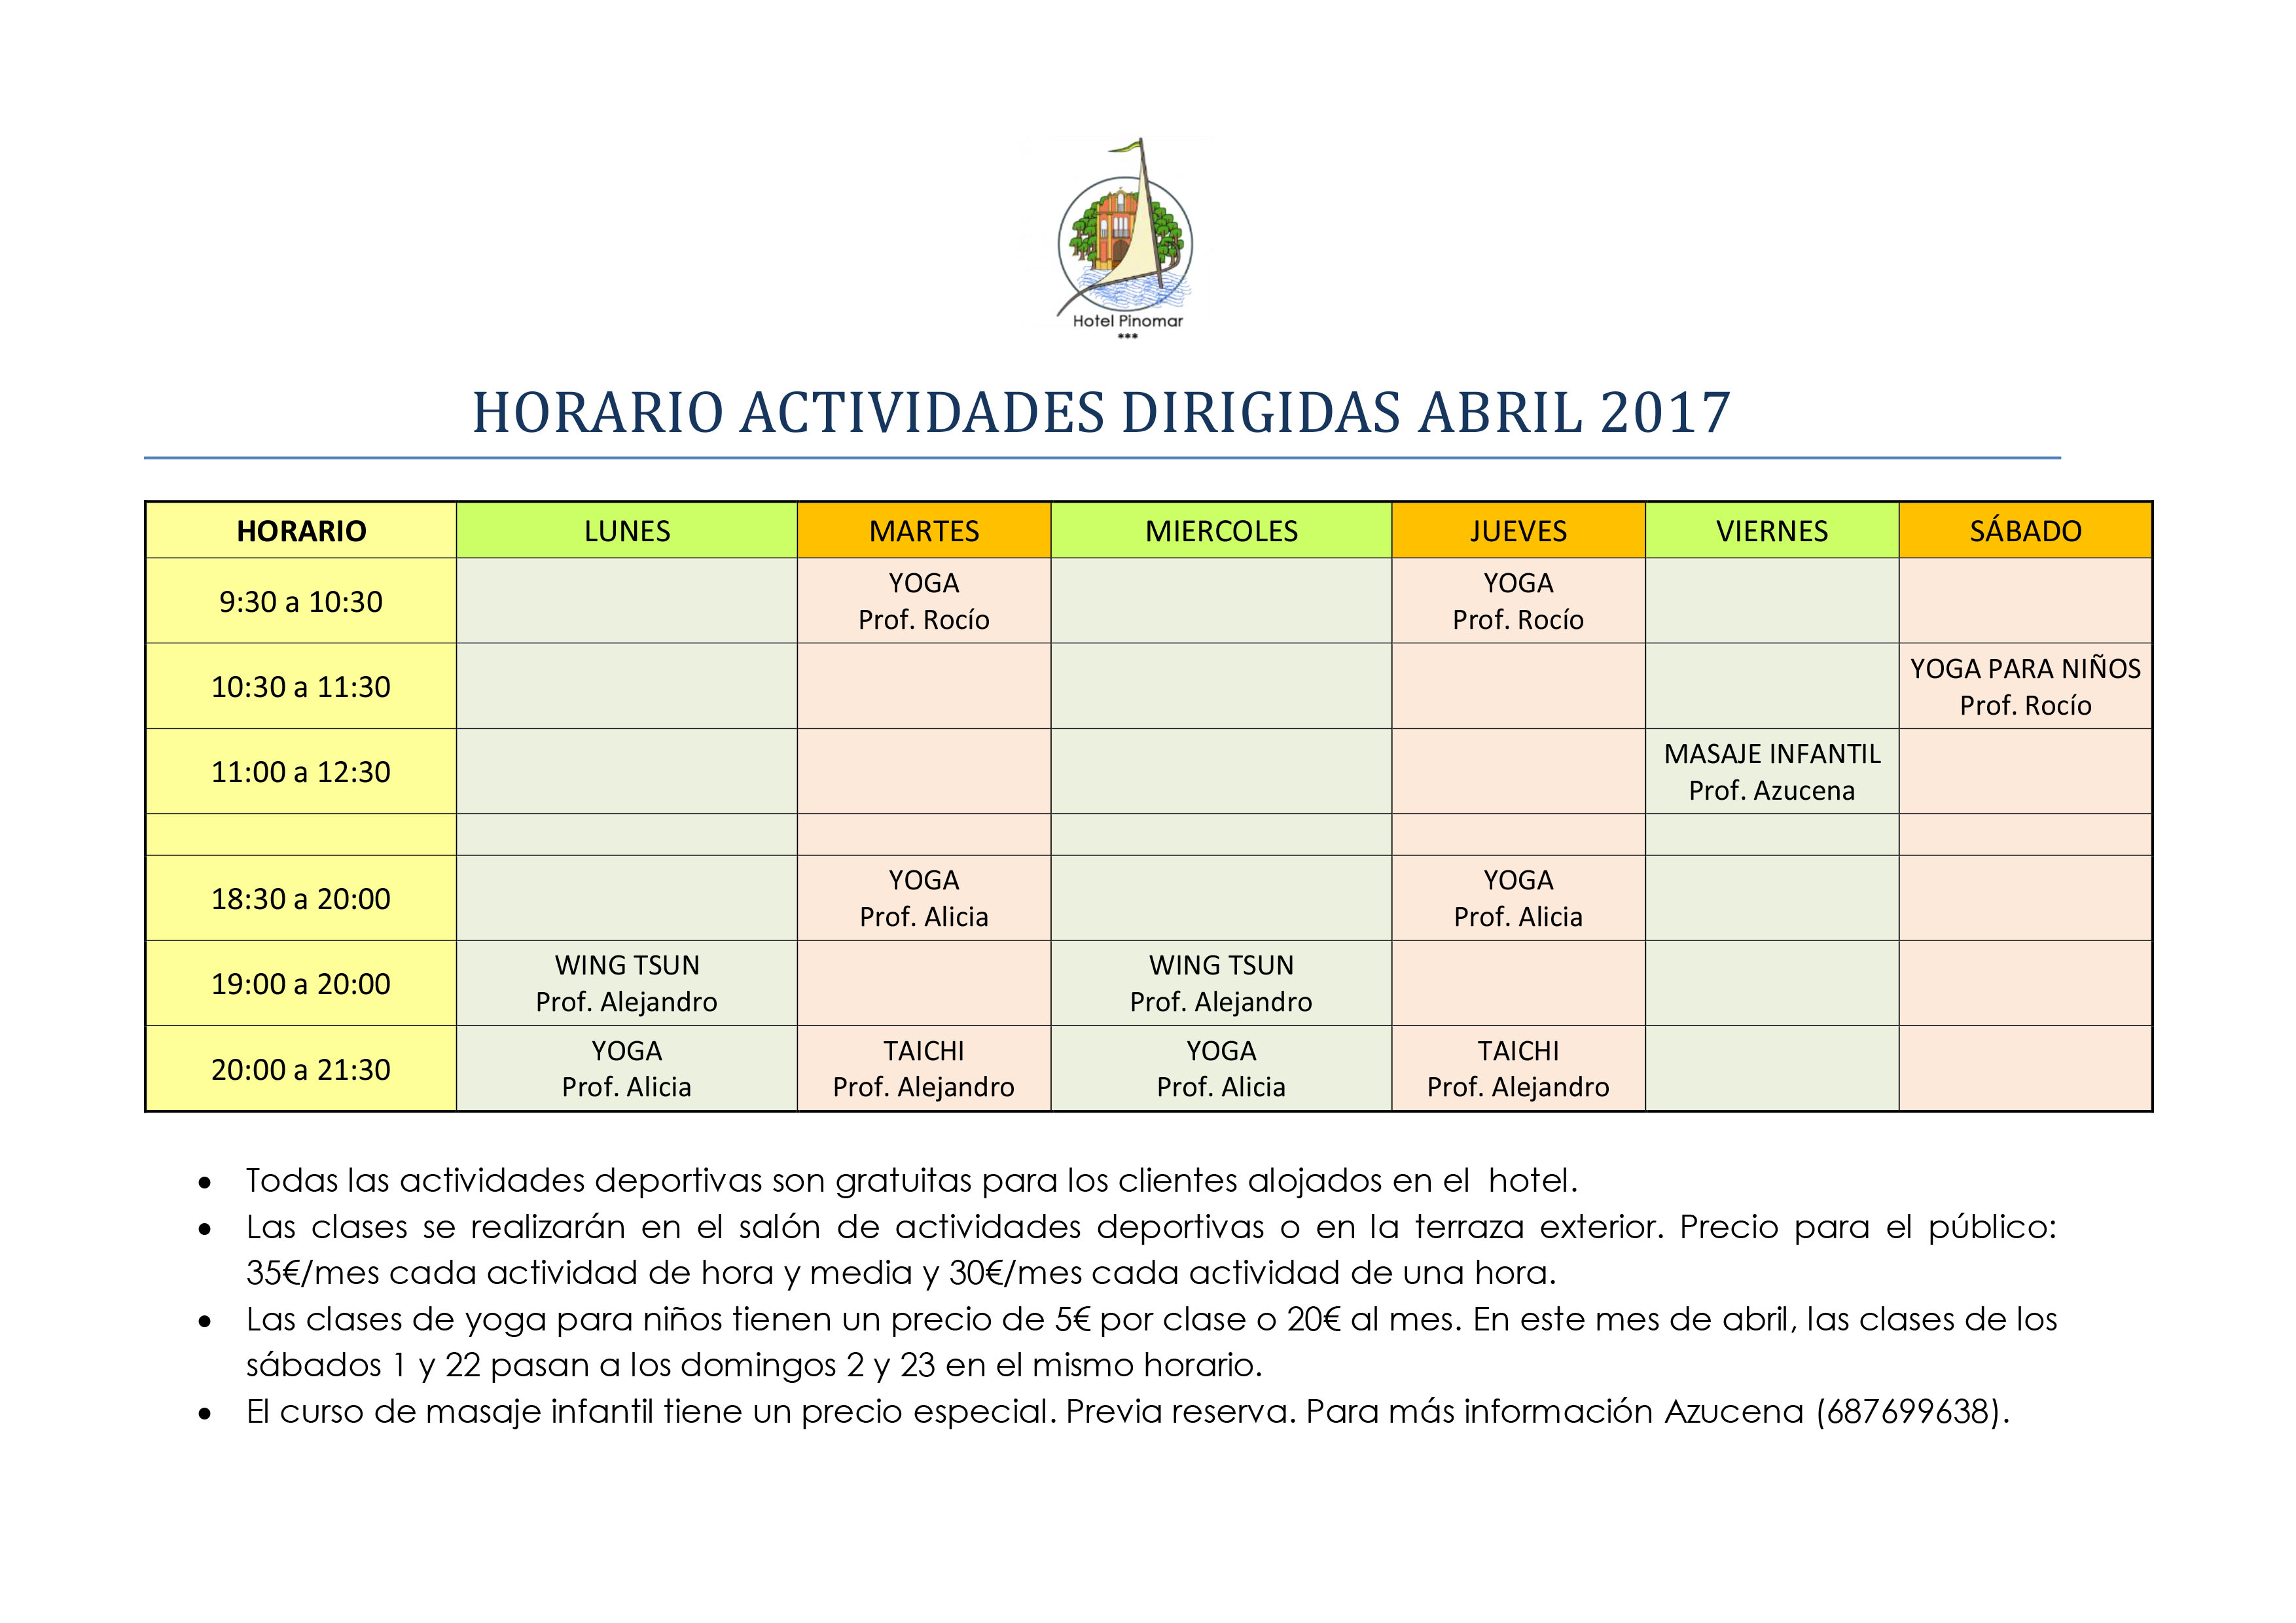 HORARIO ACTIVIDADES DIRIGIDAS ABRIL 2017